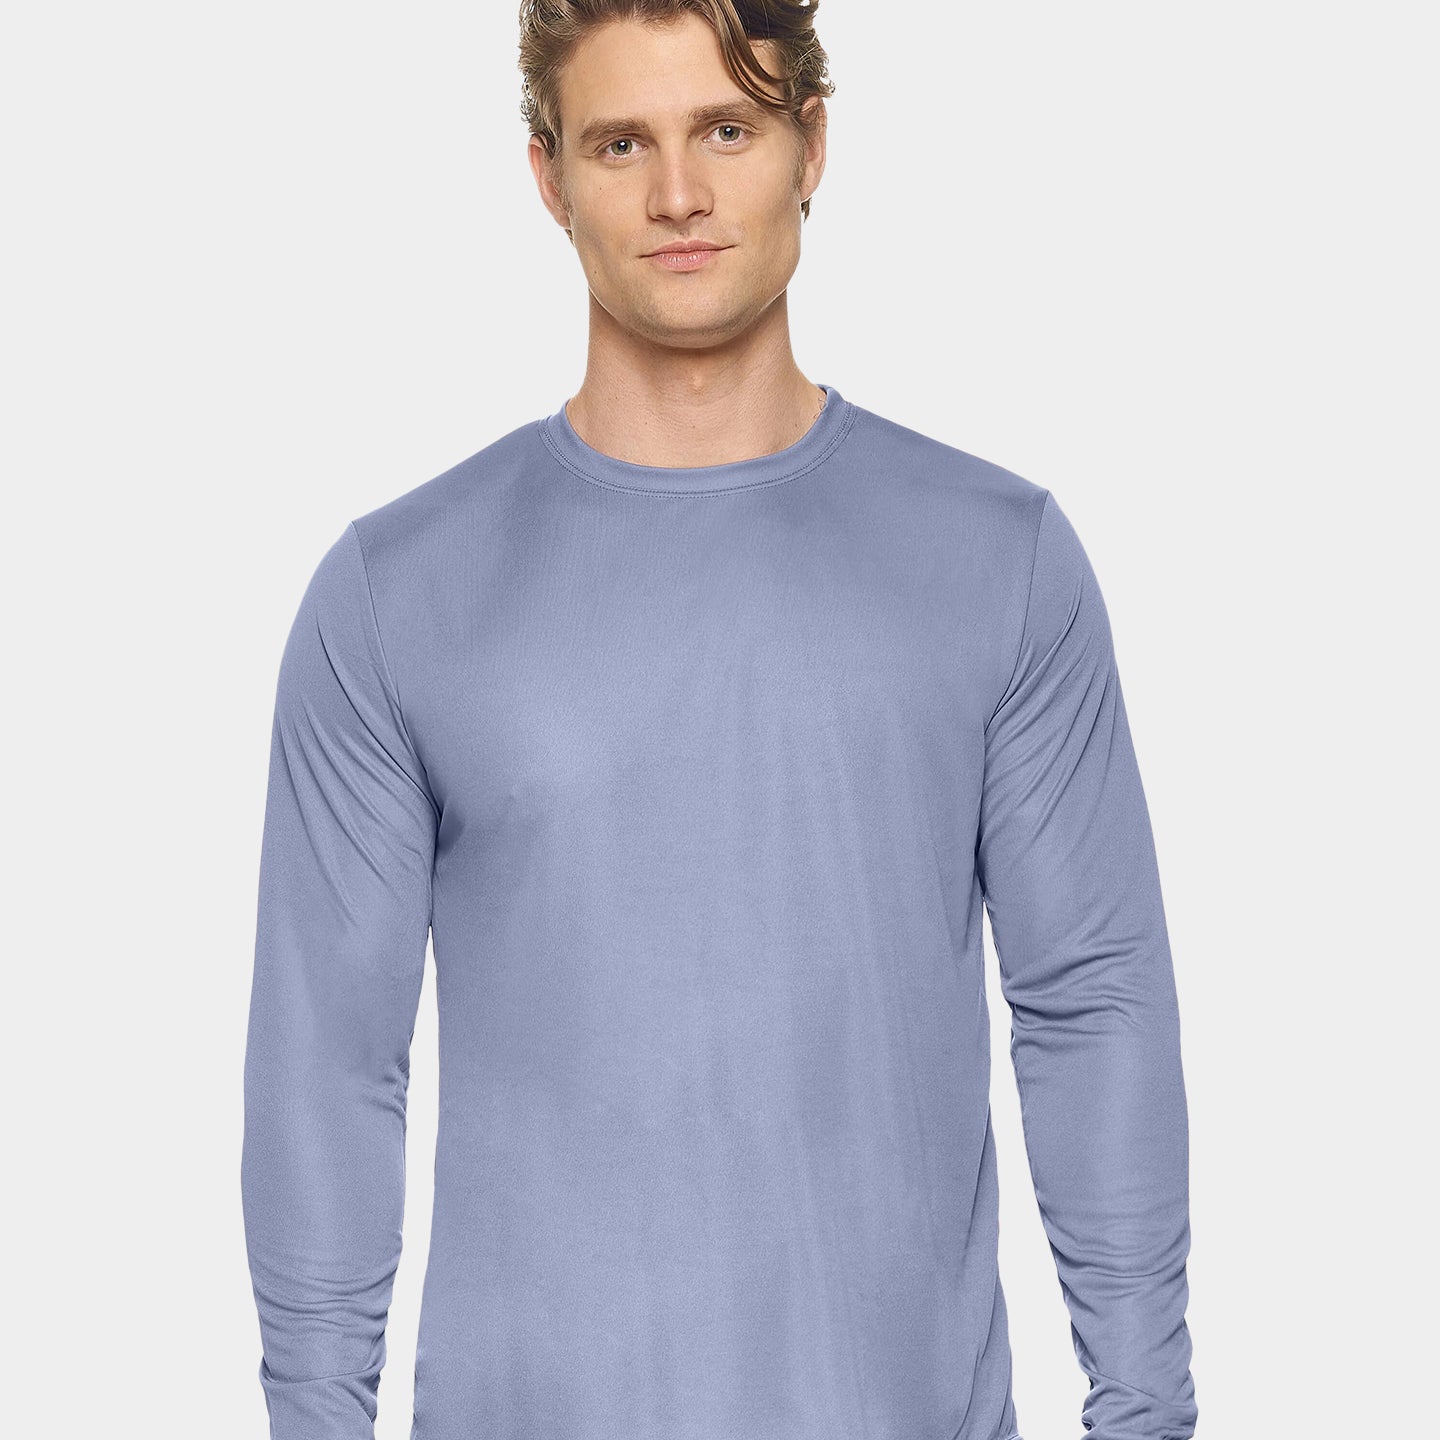 Expert Brand DriMax Men's Performance Long Sleeve Shirt, 3XL, Steel A1